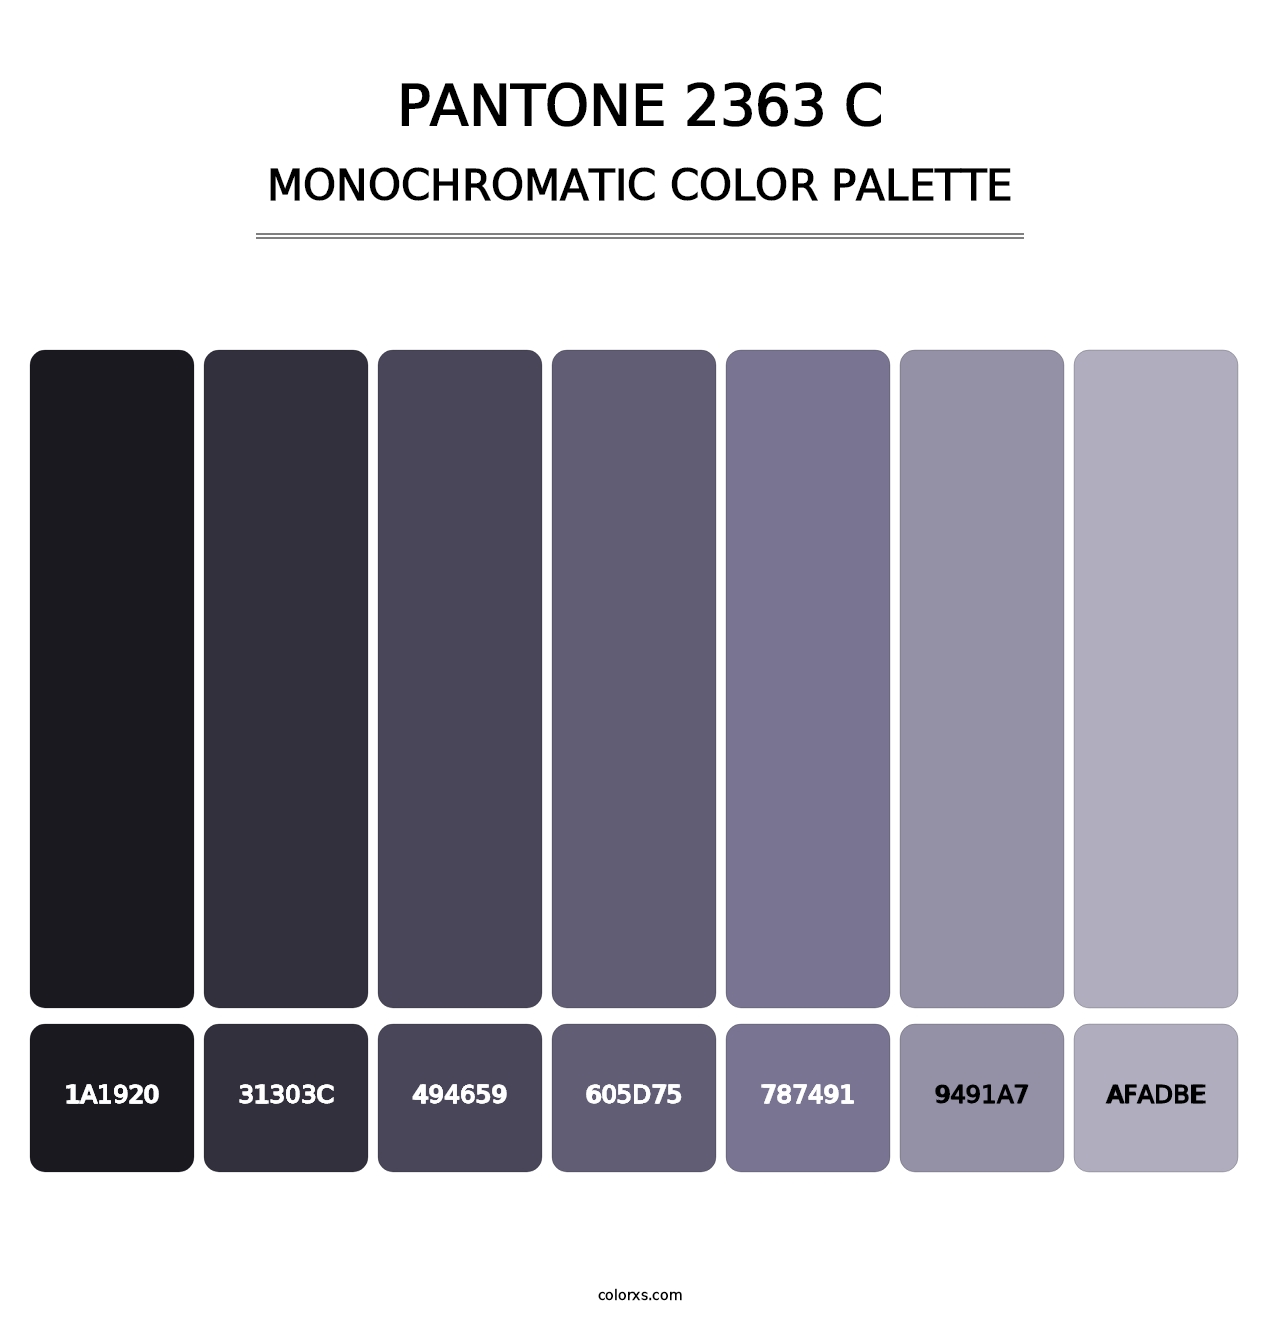 PANTONE 2363 C - Monochromatic Color Palette